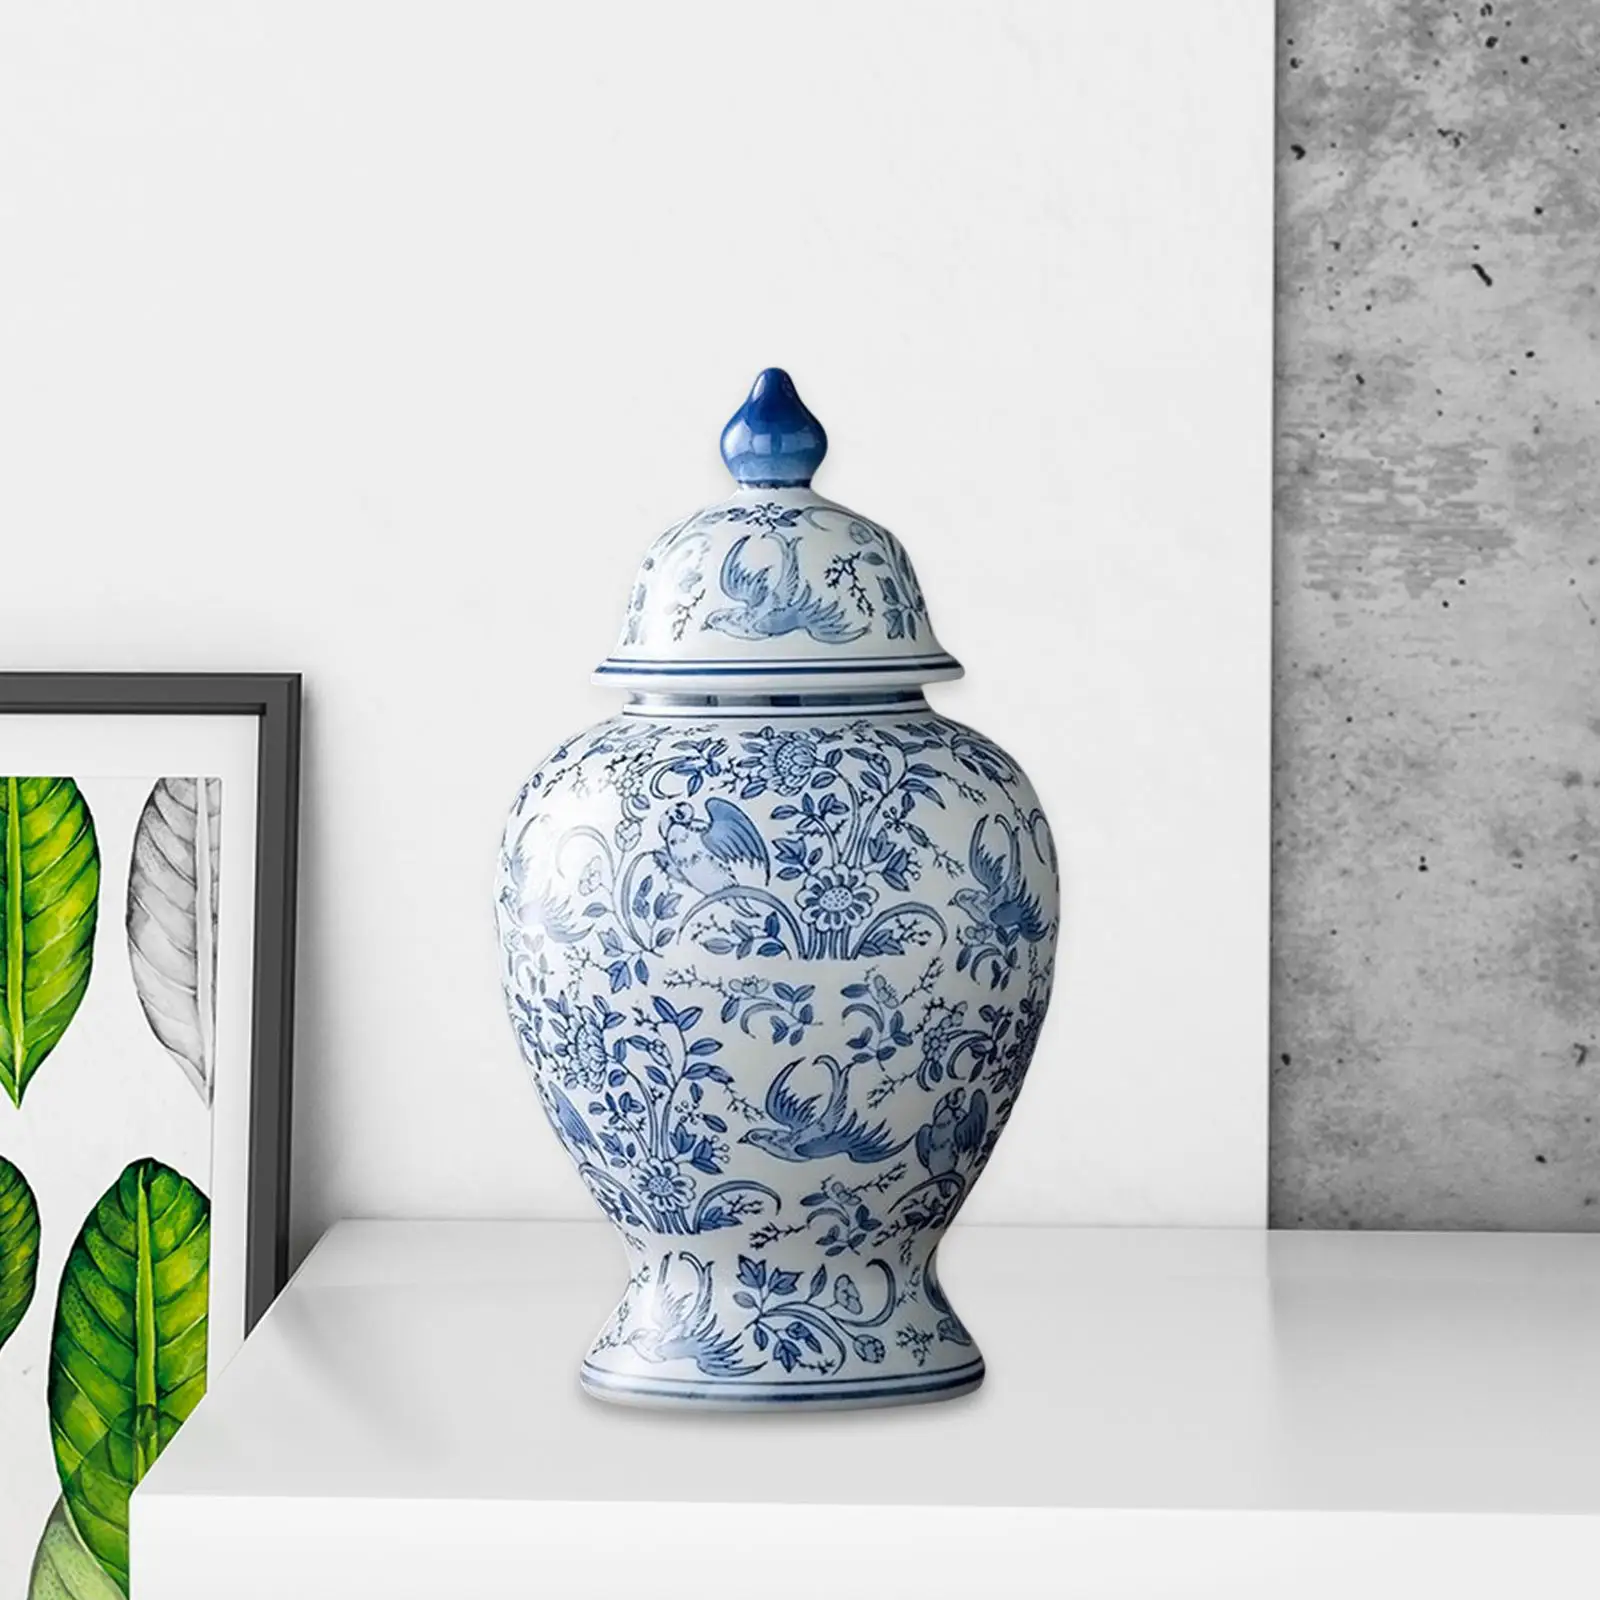 Mandarin Ceramic Ginger Jar with Lid vase Decorative for Home Wedding